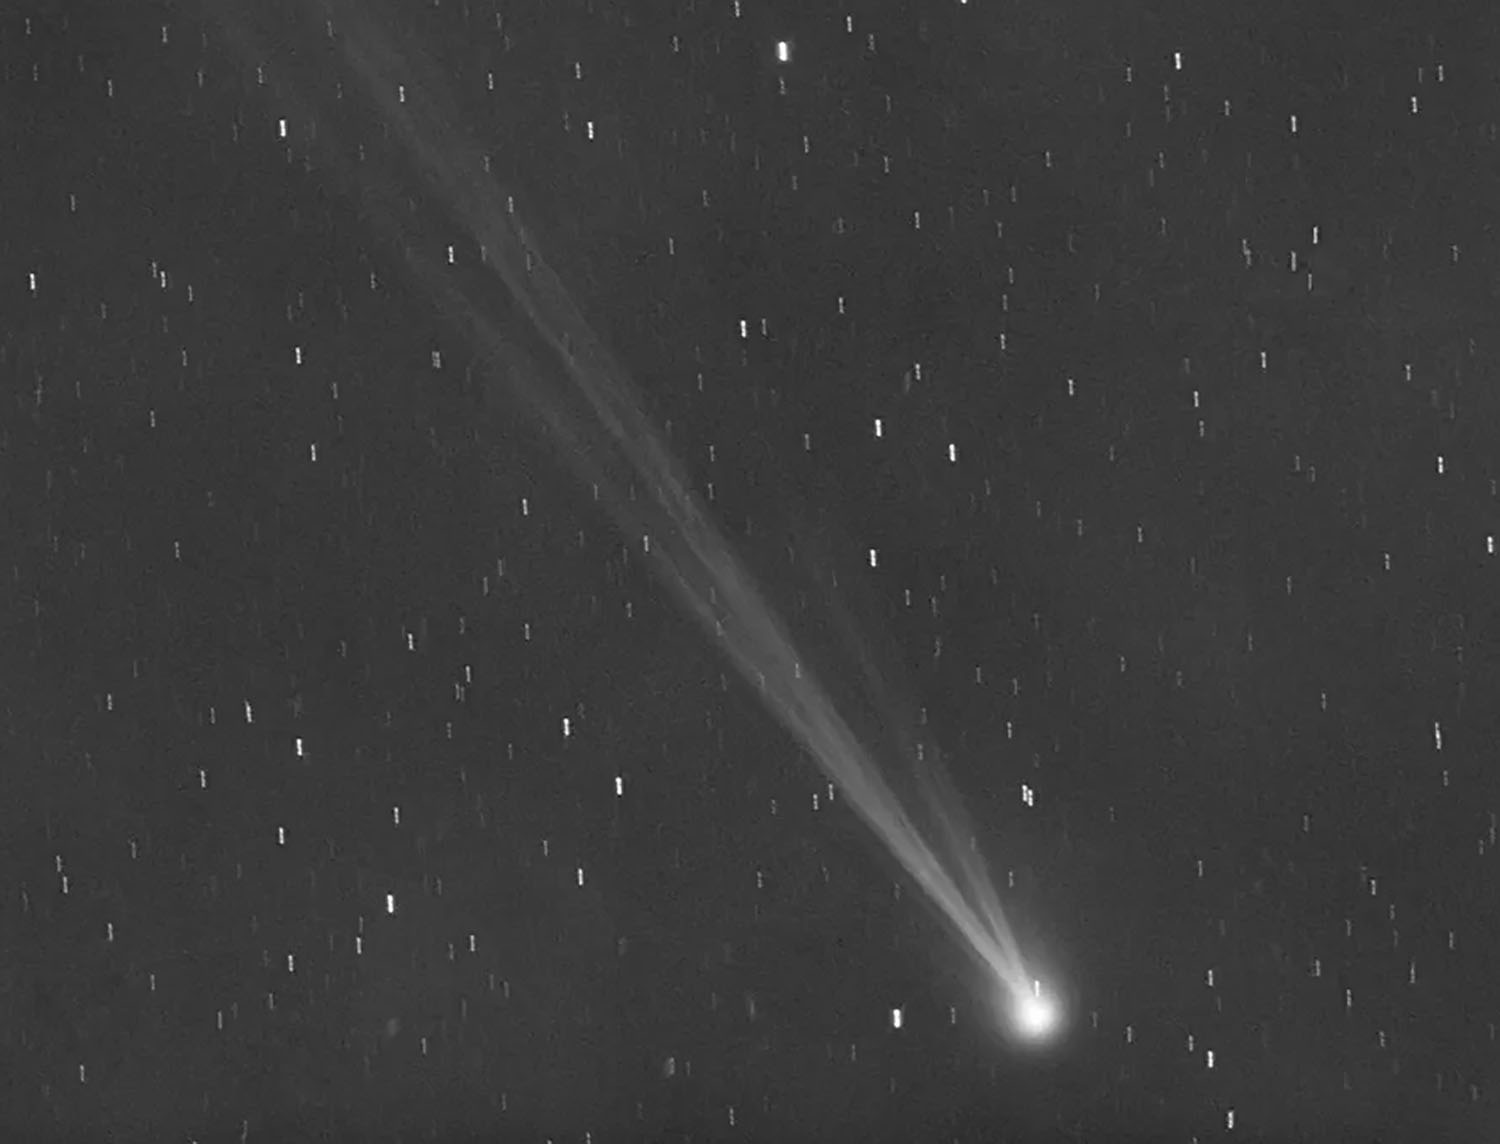 Ο κομήτης Nishimura προσφέρει εξαιρετική και σπάνια φωτογραφική ευκαιρία!